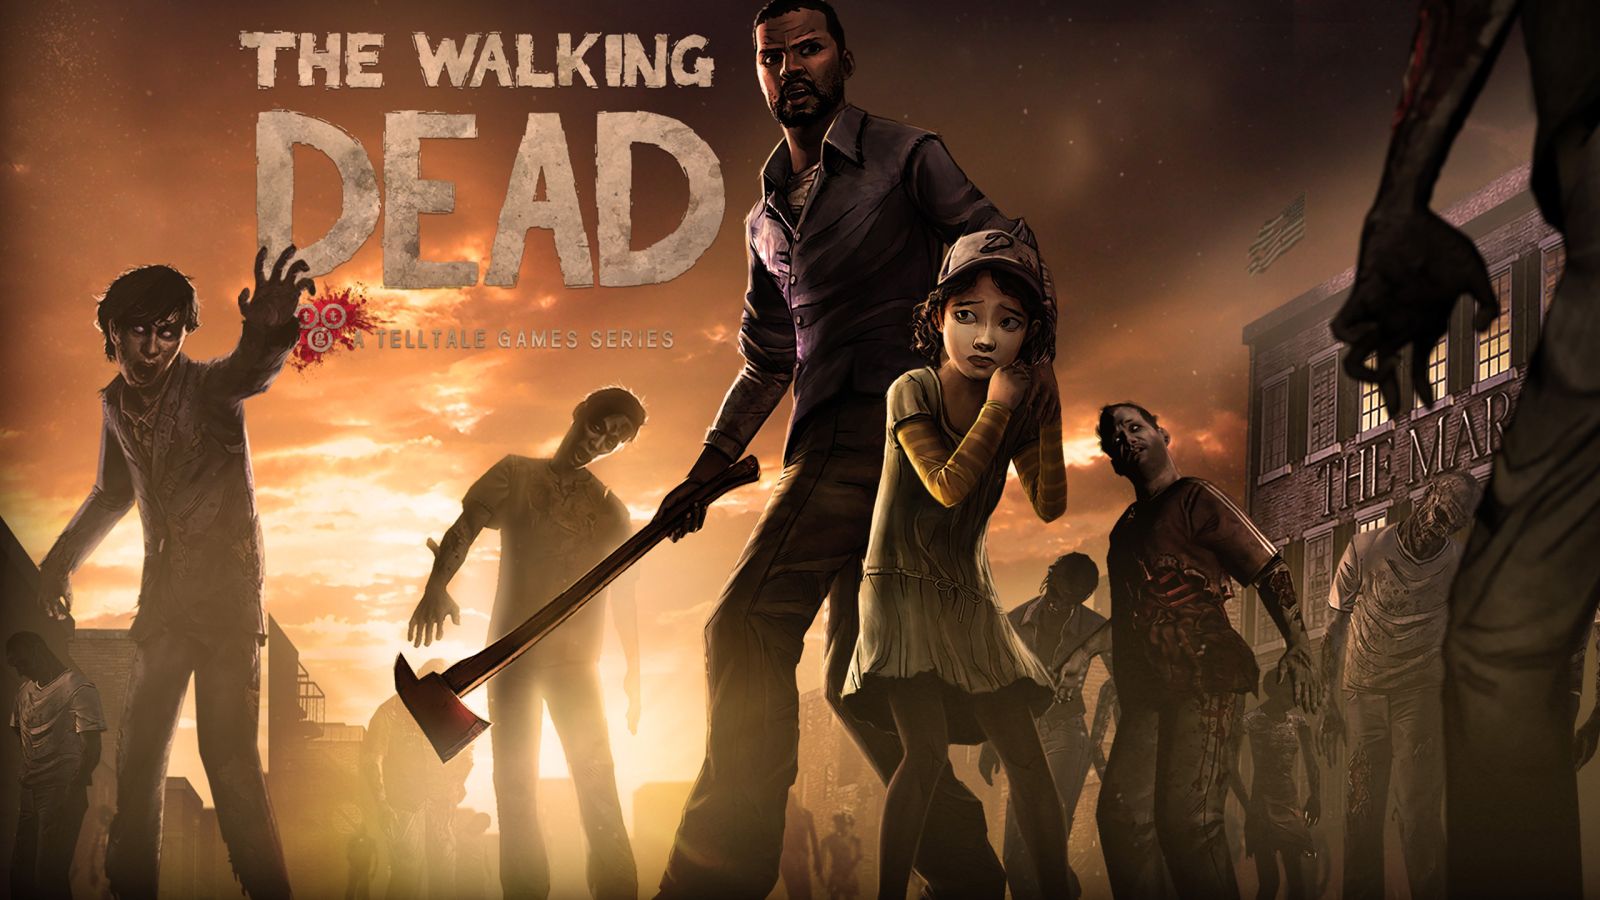 Với đồ họa theo phong cách 2.5D, The Walking Dead: Season One giống một cuốn truyện tranh về đề tài xác sống, nơi bạn sẽ tự viết nên câu chuyện cho 2 nhân vật chính.